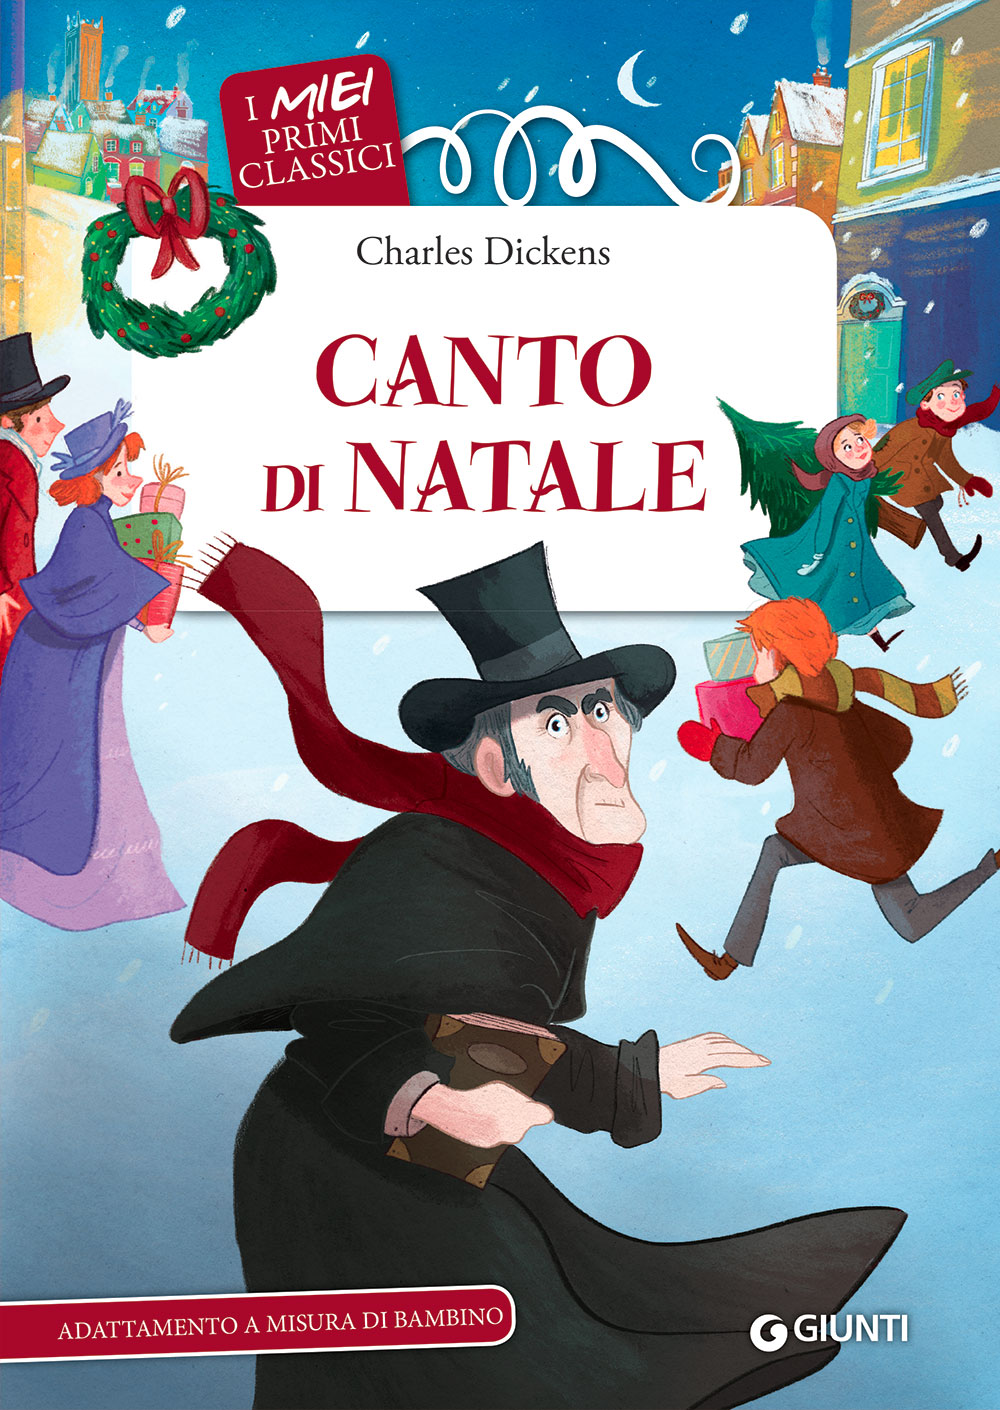 Canto Di Natale By Charles Dickens. I Miei Primi Classici